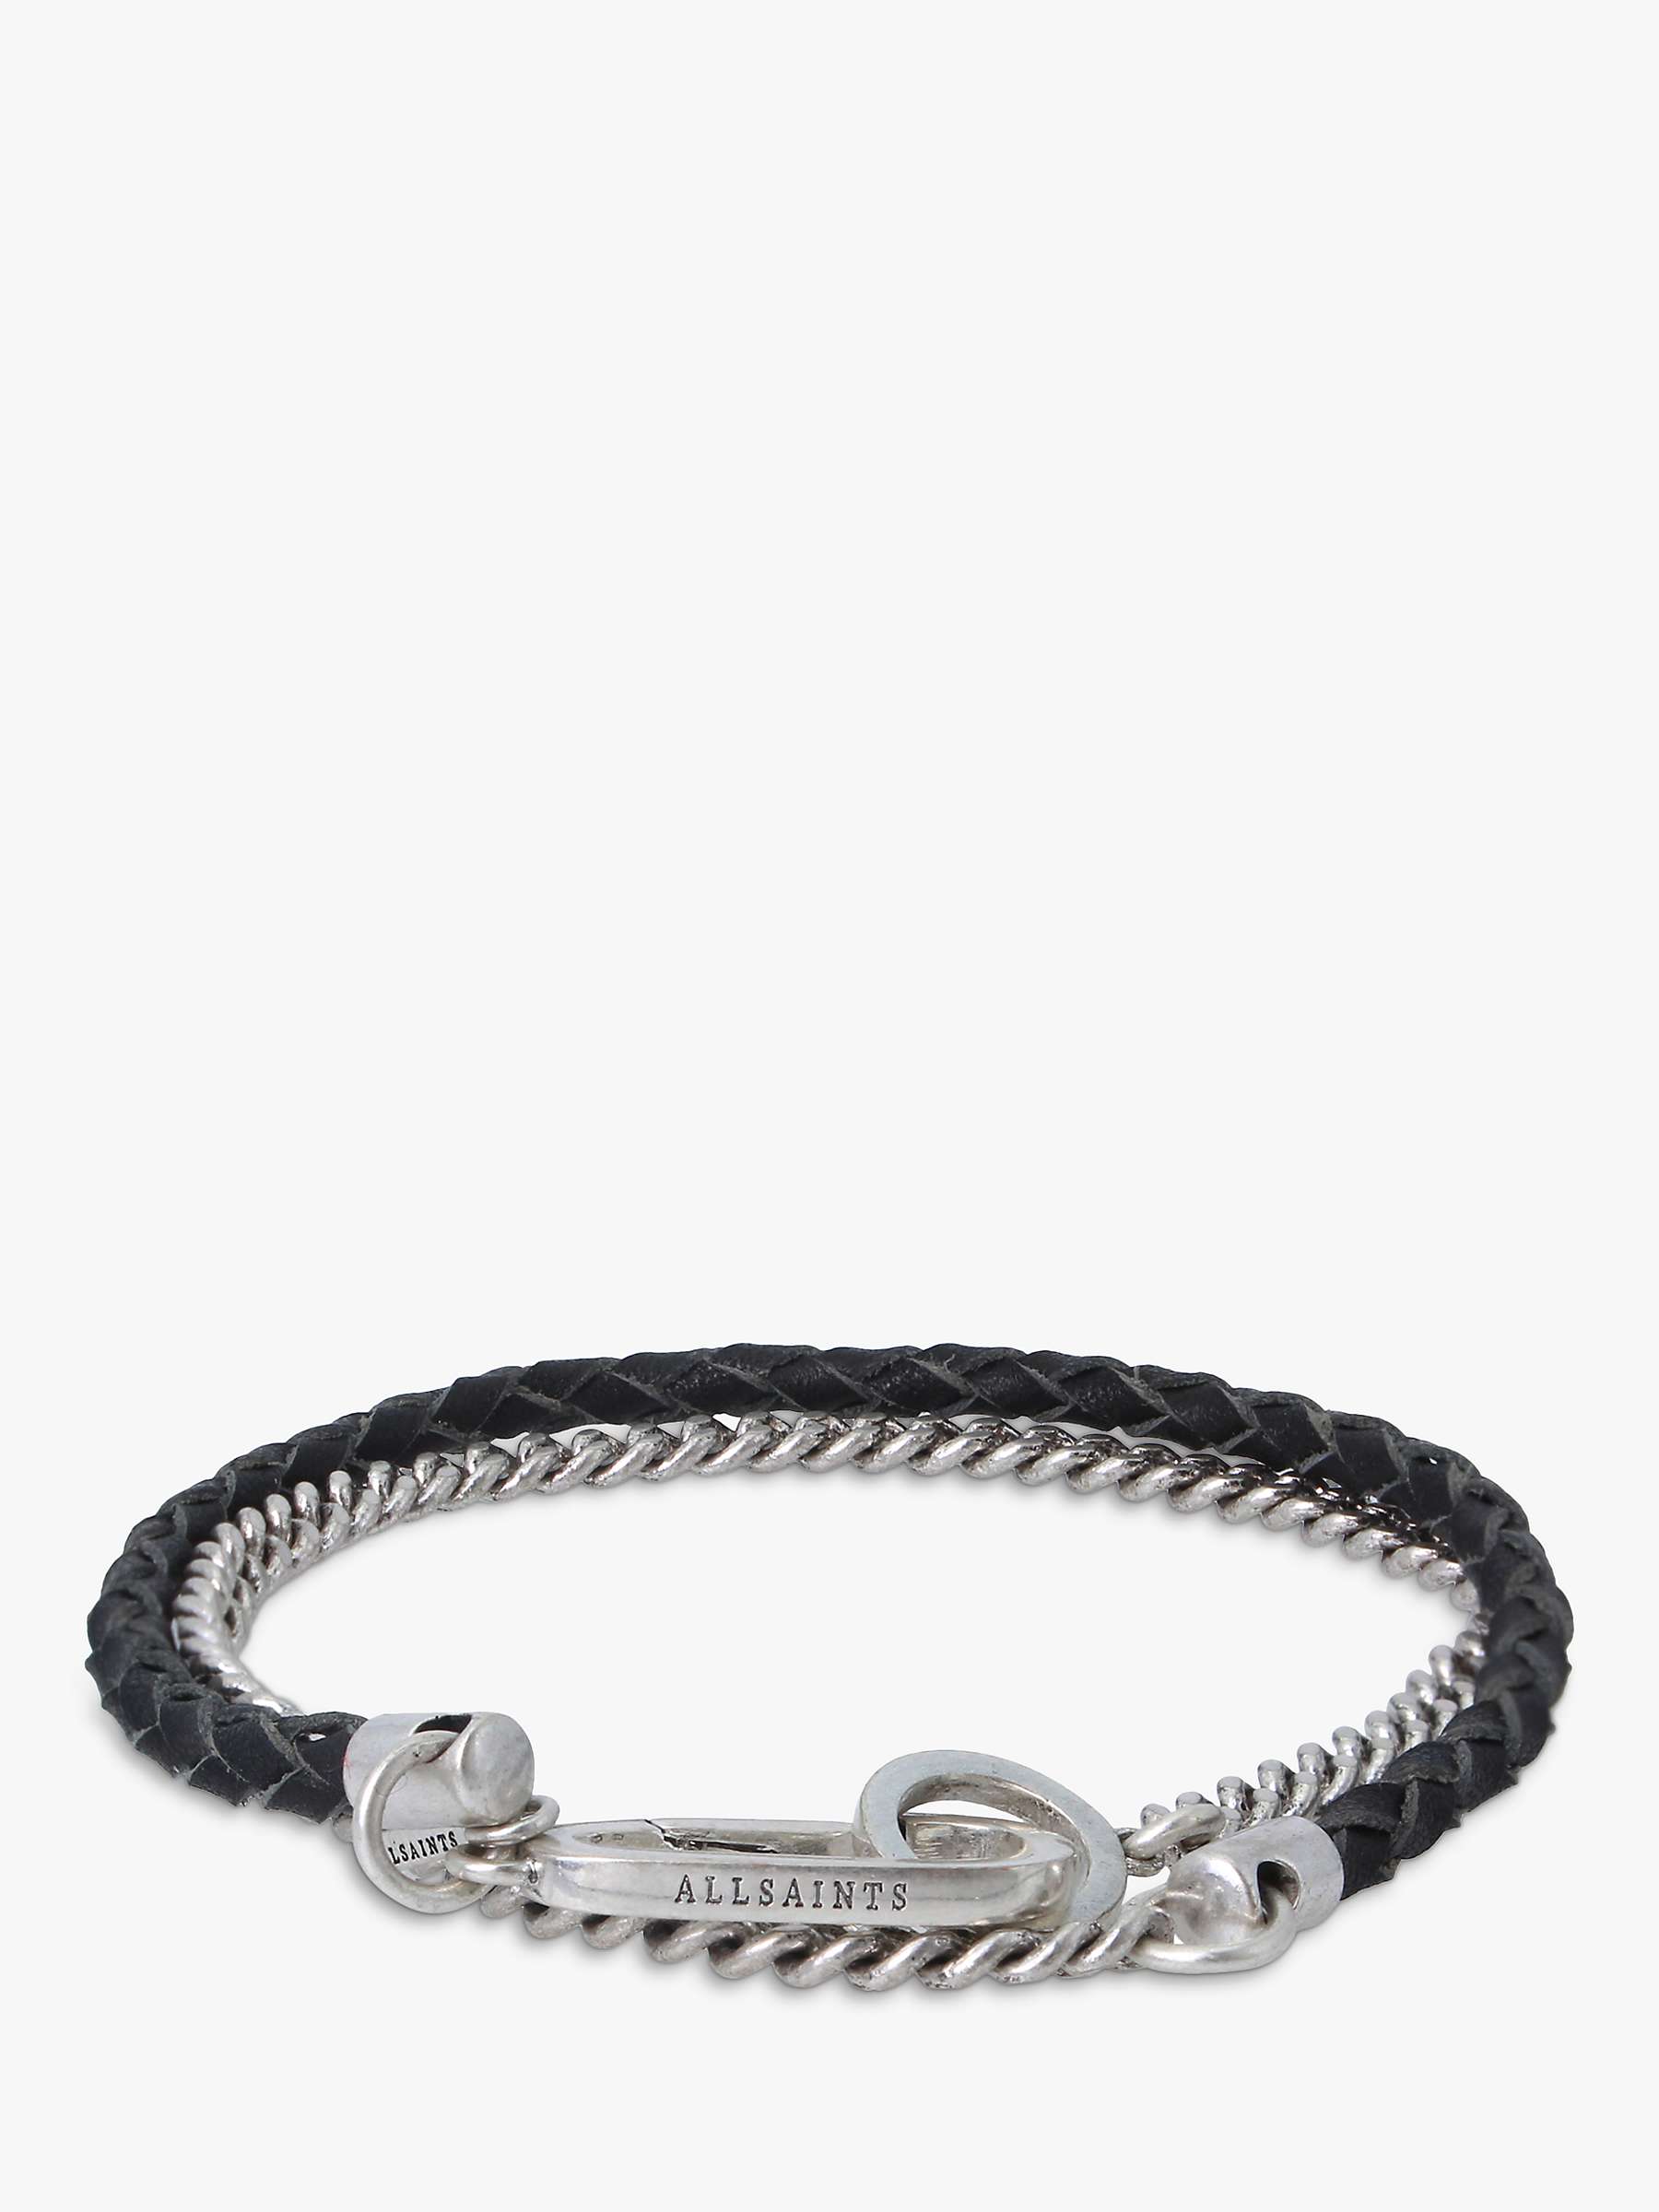 Buy AllSaints Men's Mix Leather Chain Flex Bracelet, Silver Online at johnlewis.com